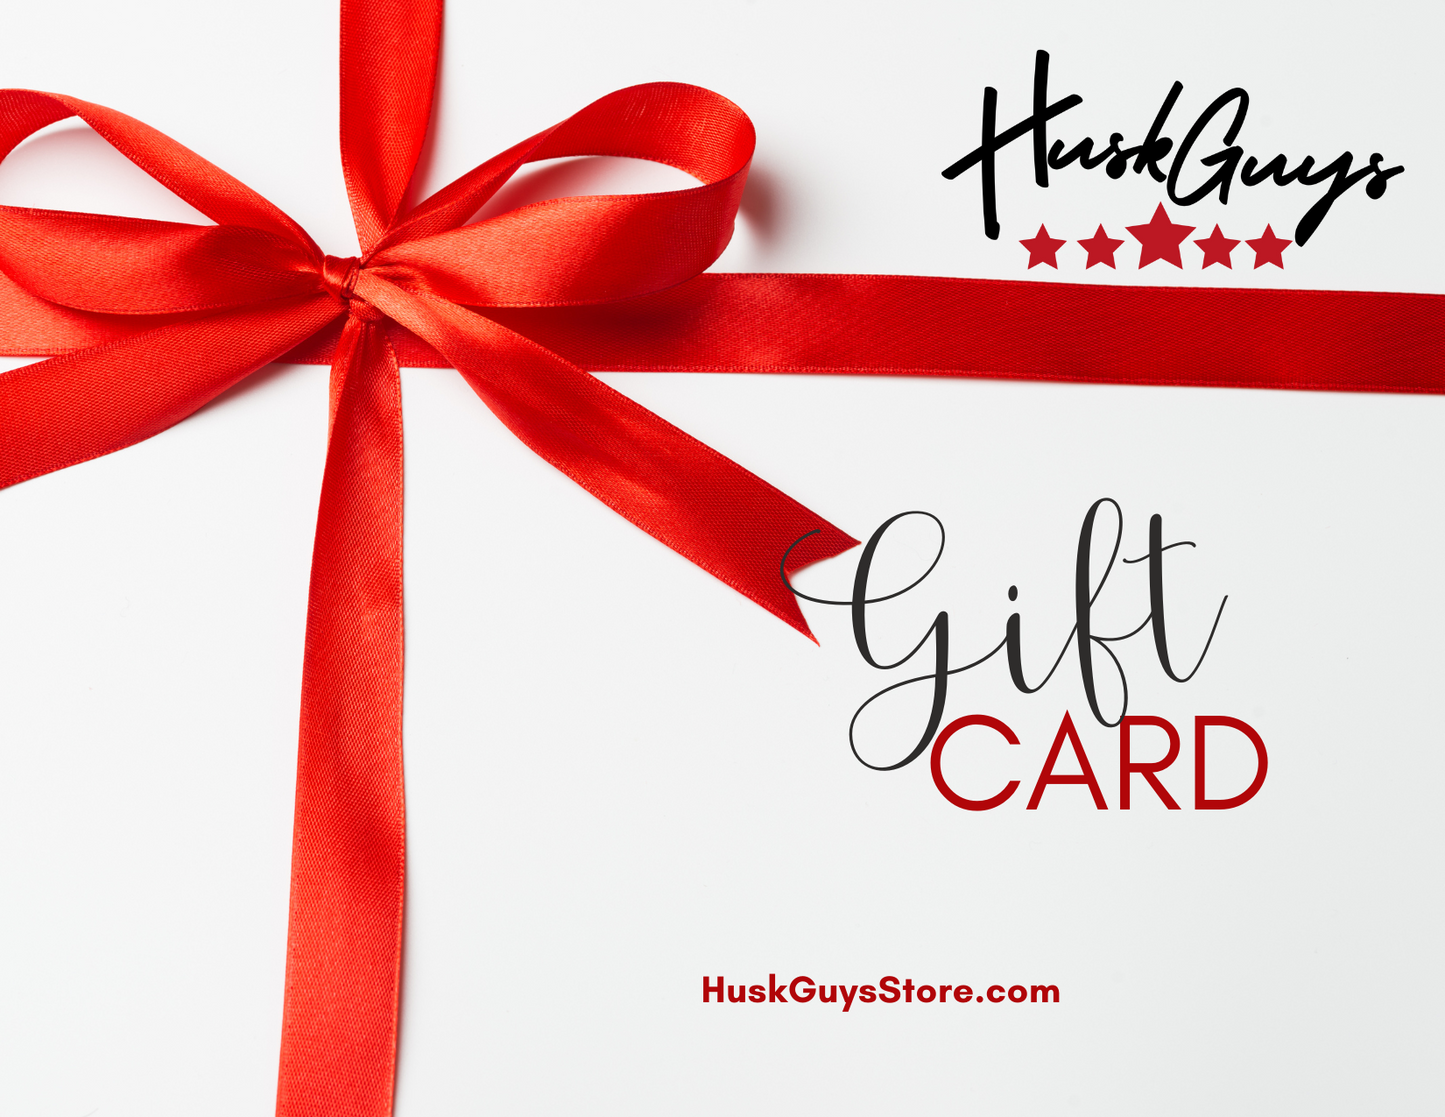 HuskGuys Gift Card